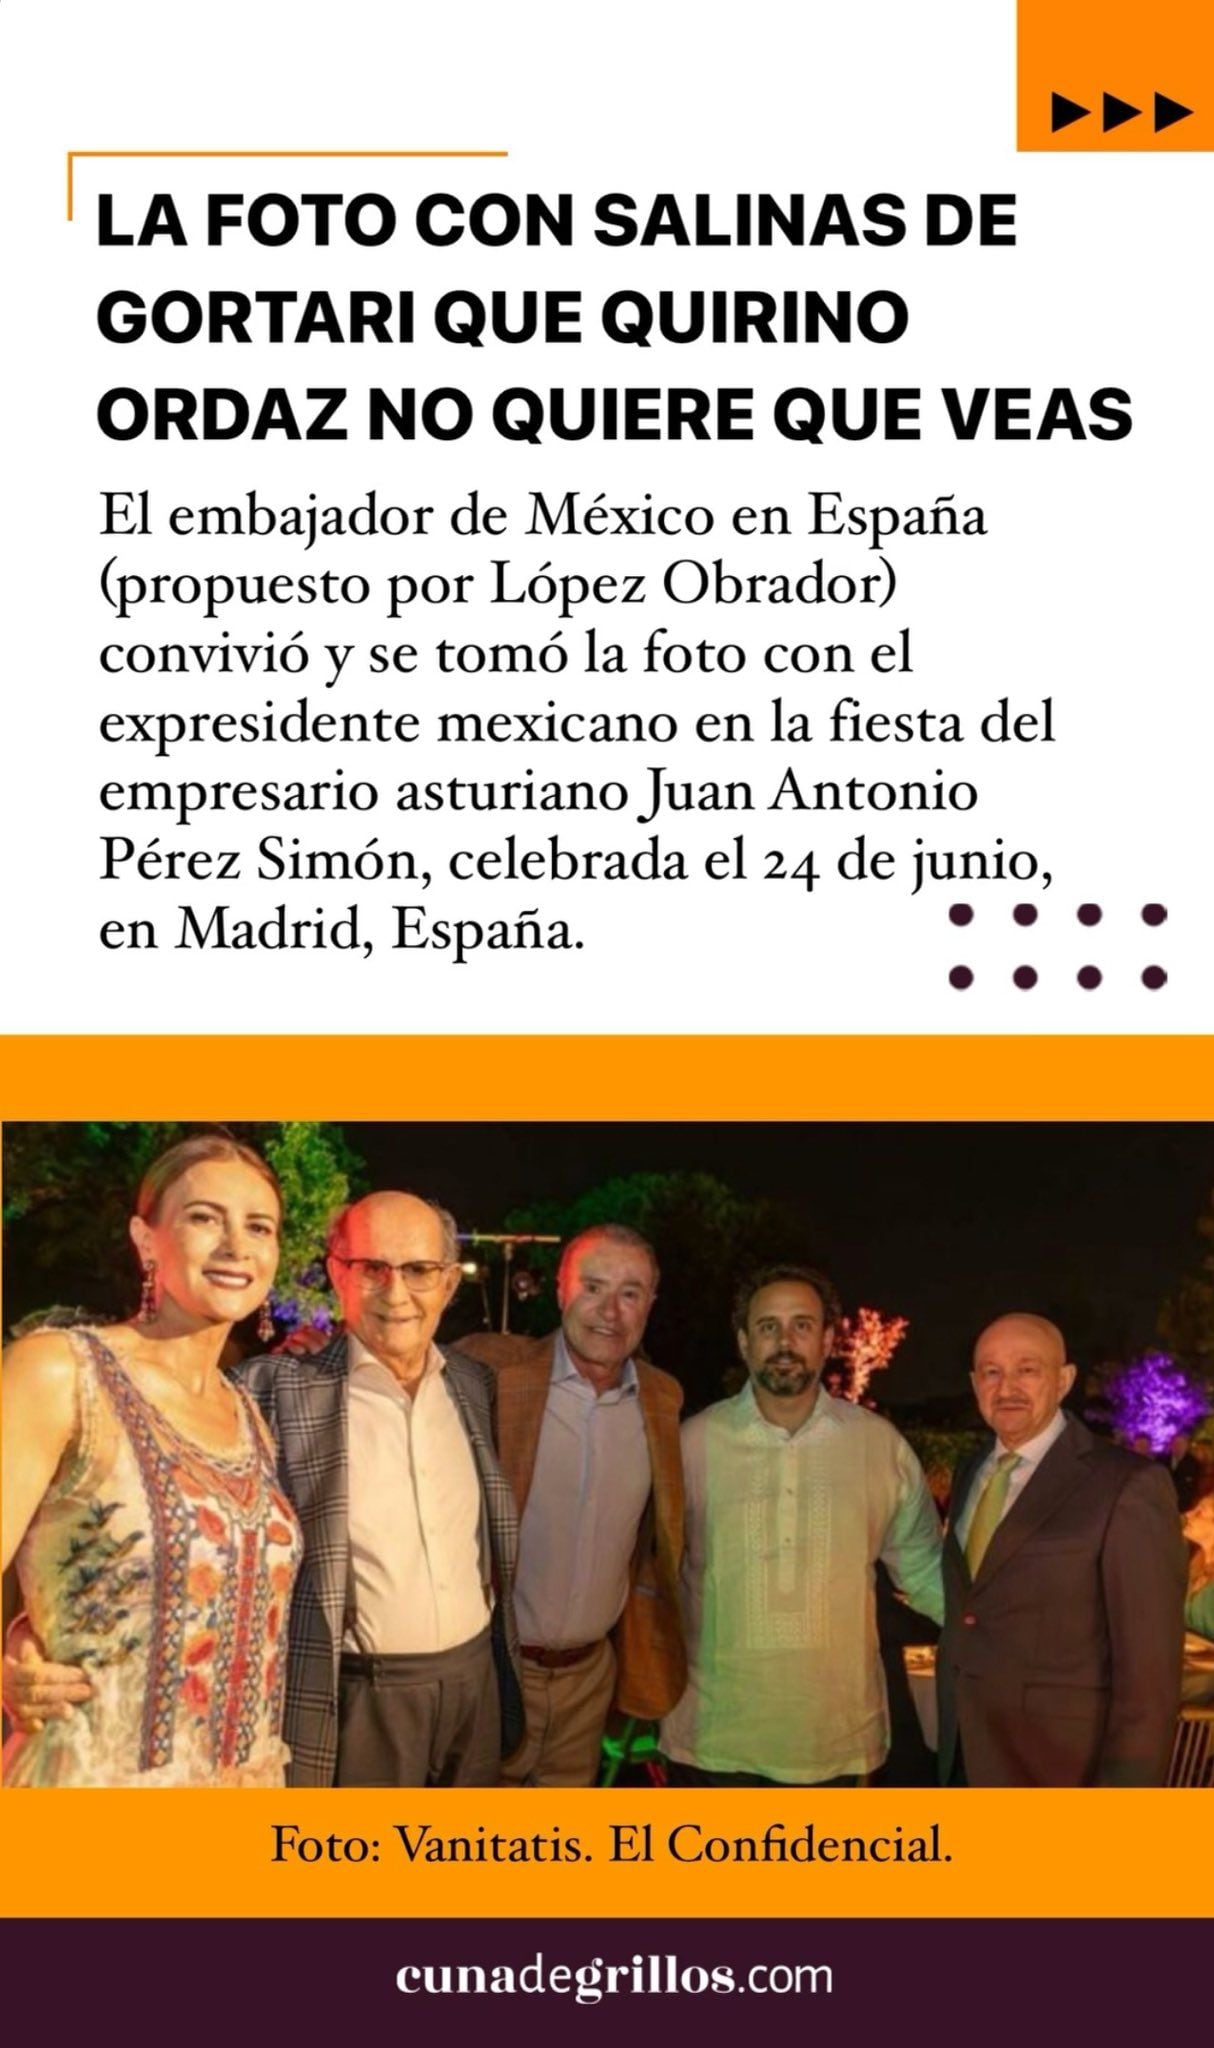 Reaparece Carlos Salinas de Gortari y posa junto al embajador de México en España, Quirino Ordaz.  (Captura de Pantalla/@cunadegrillos)